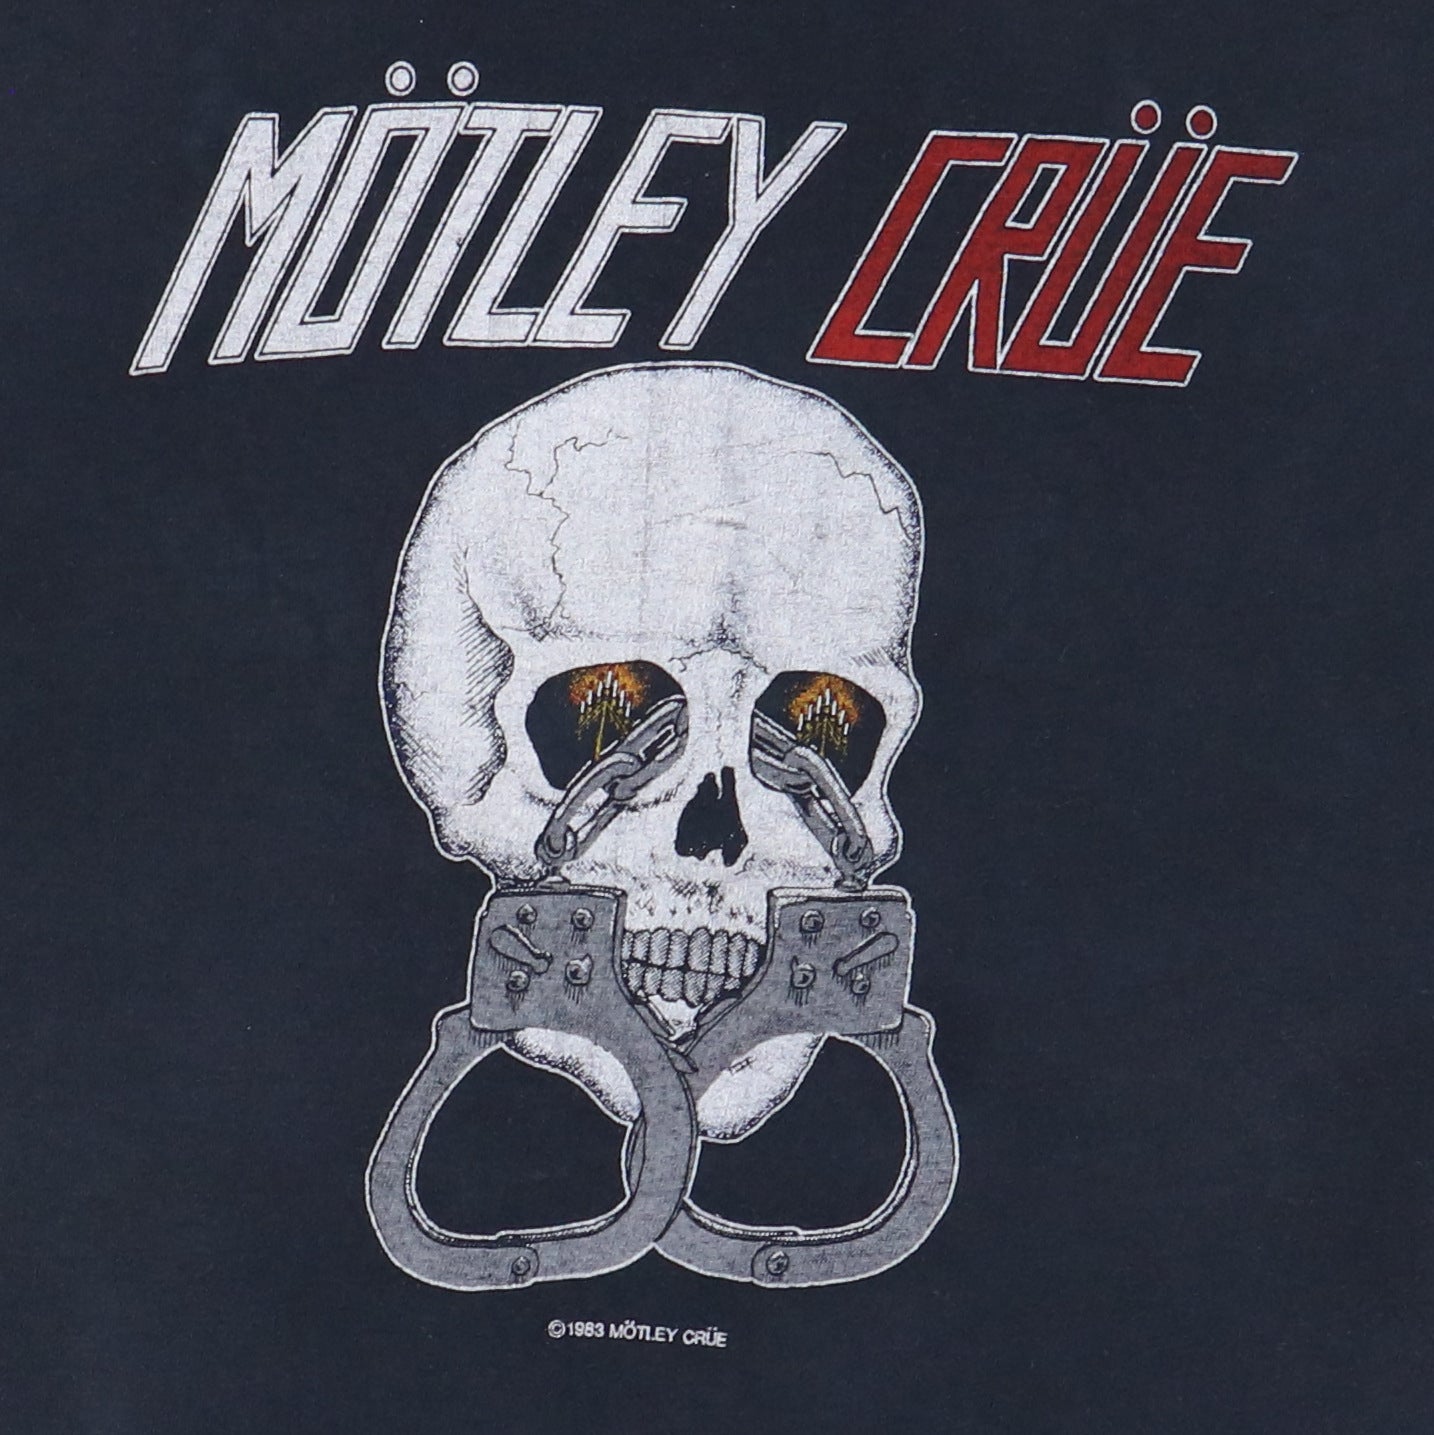 1983 Motley Crue Shirt